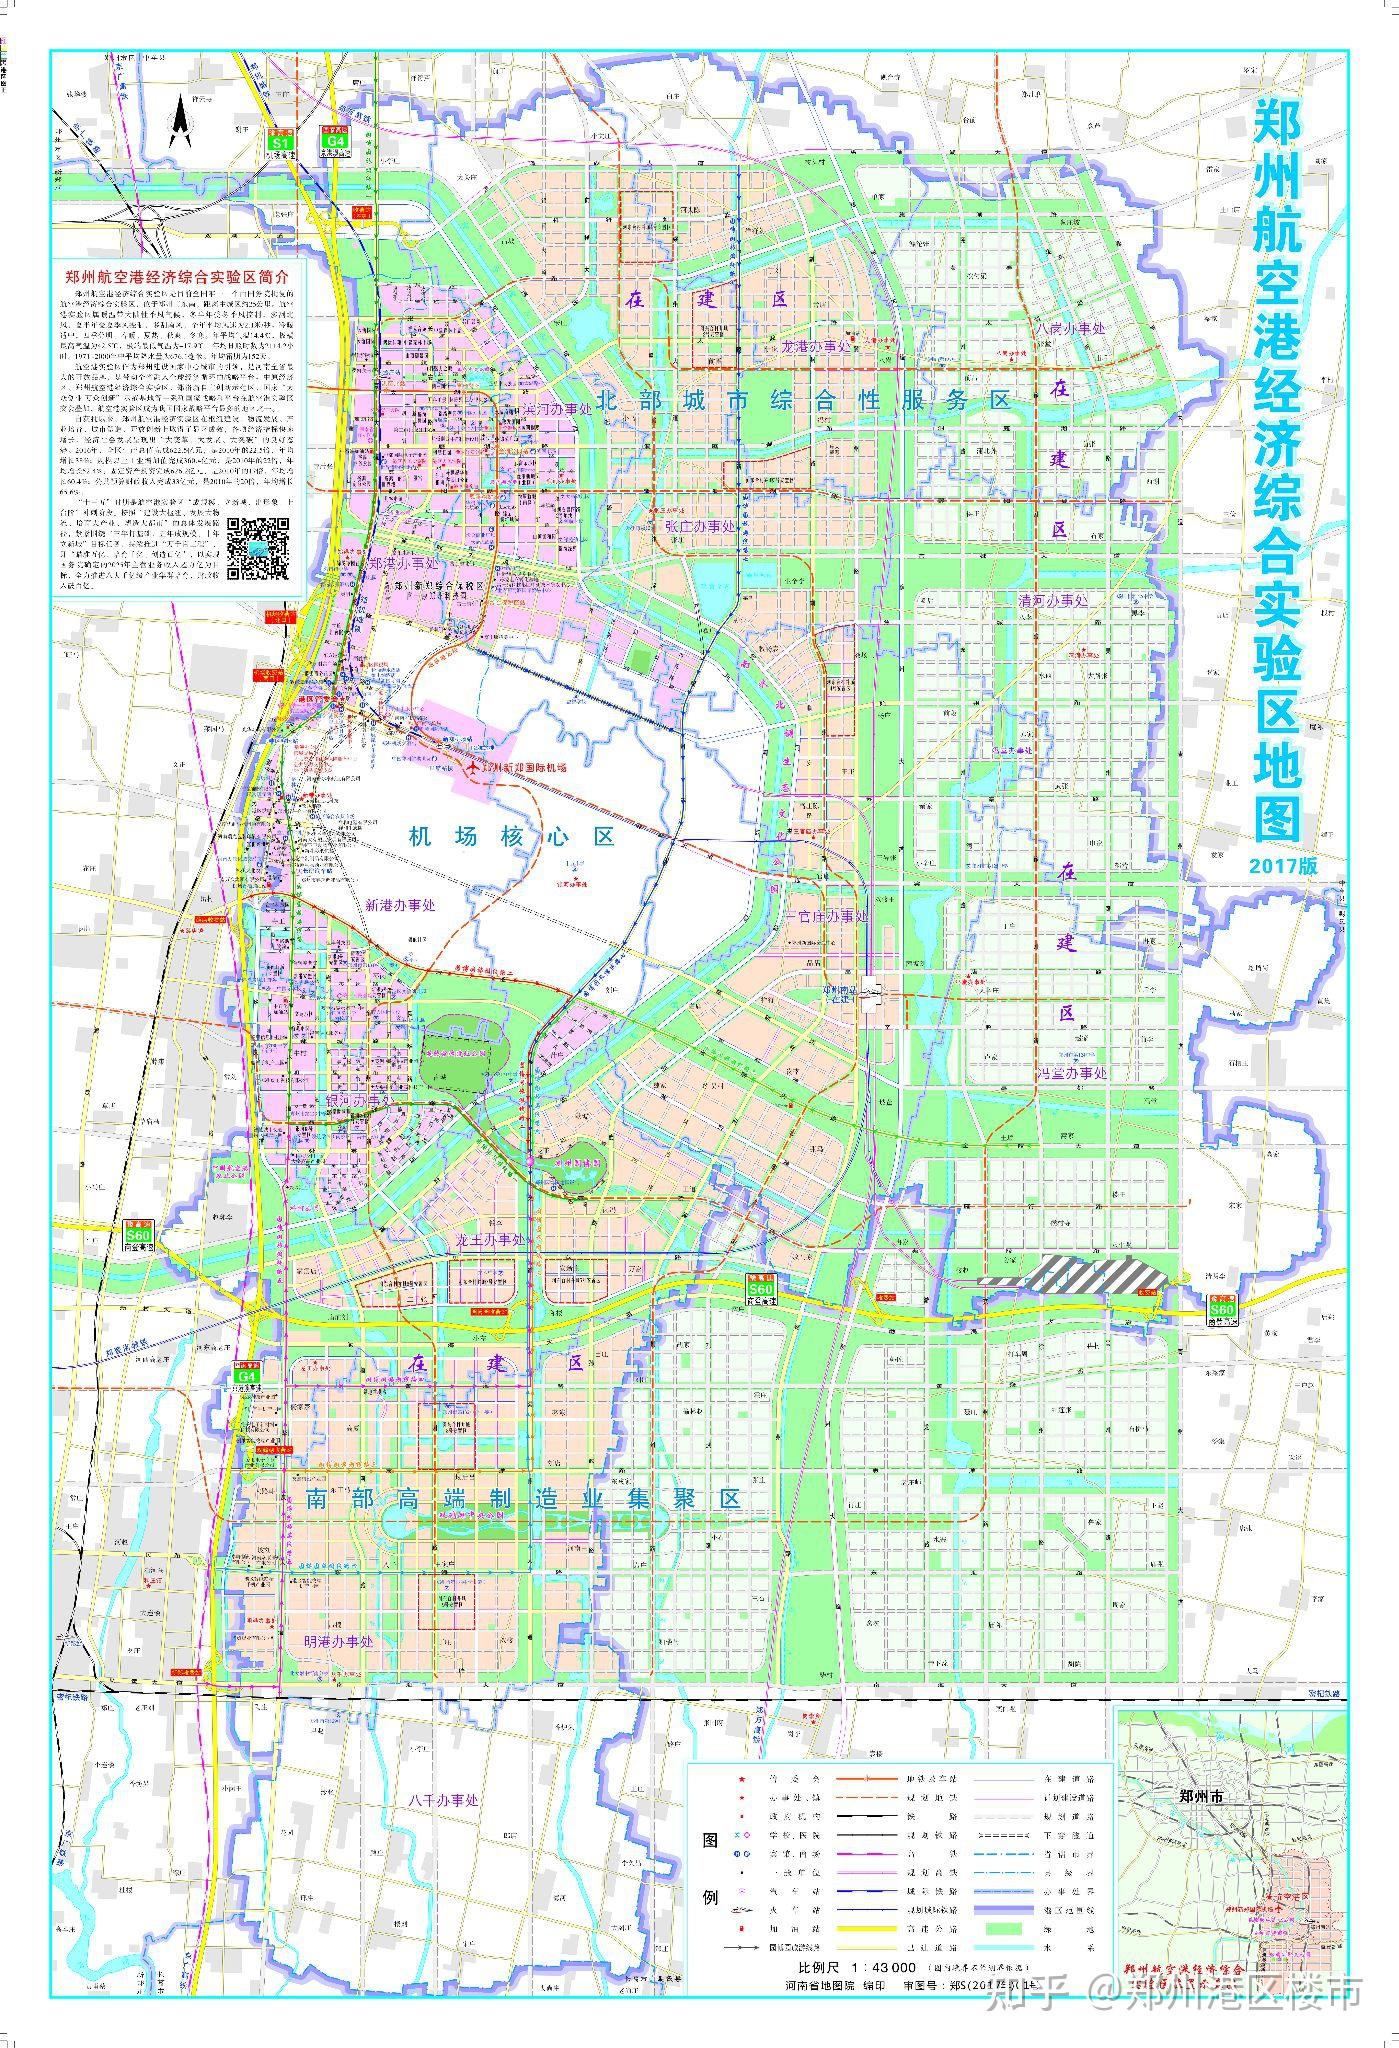 郑州航空港区的未来规划与前景